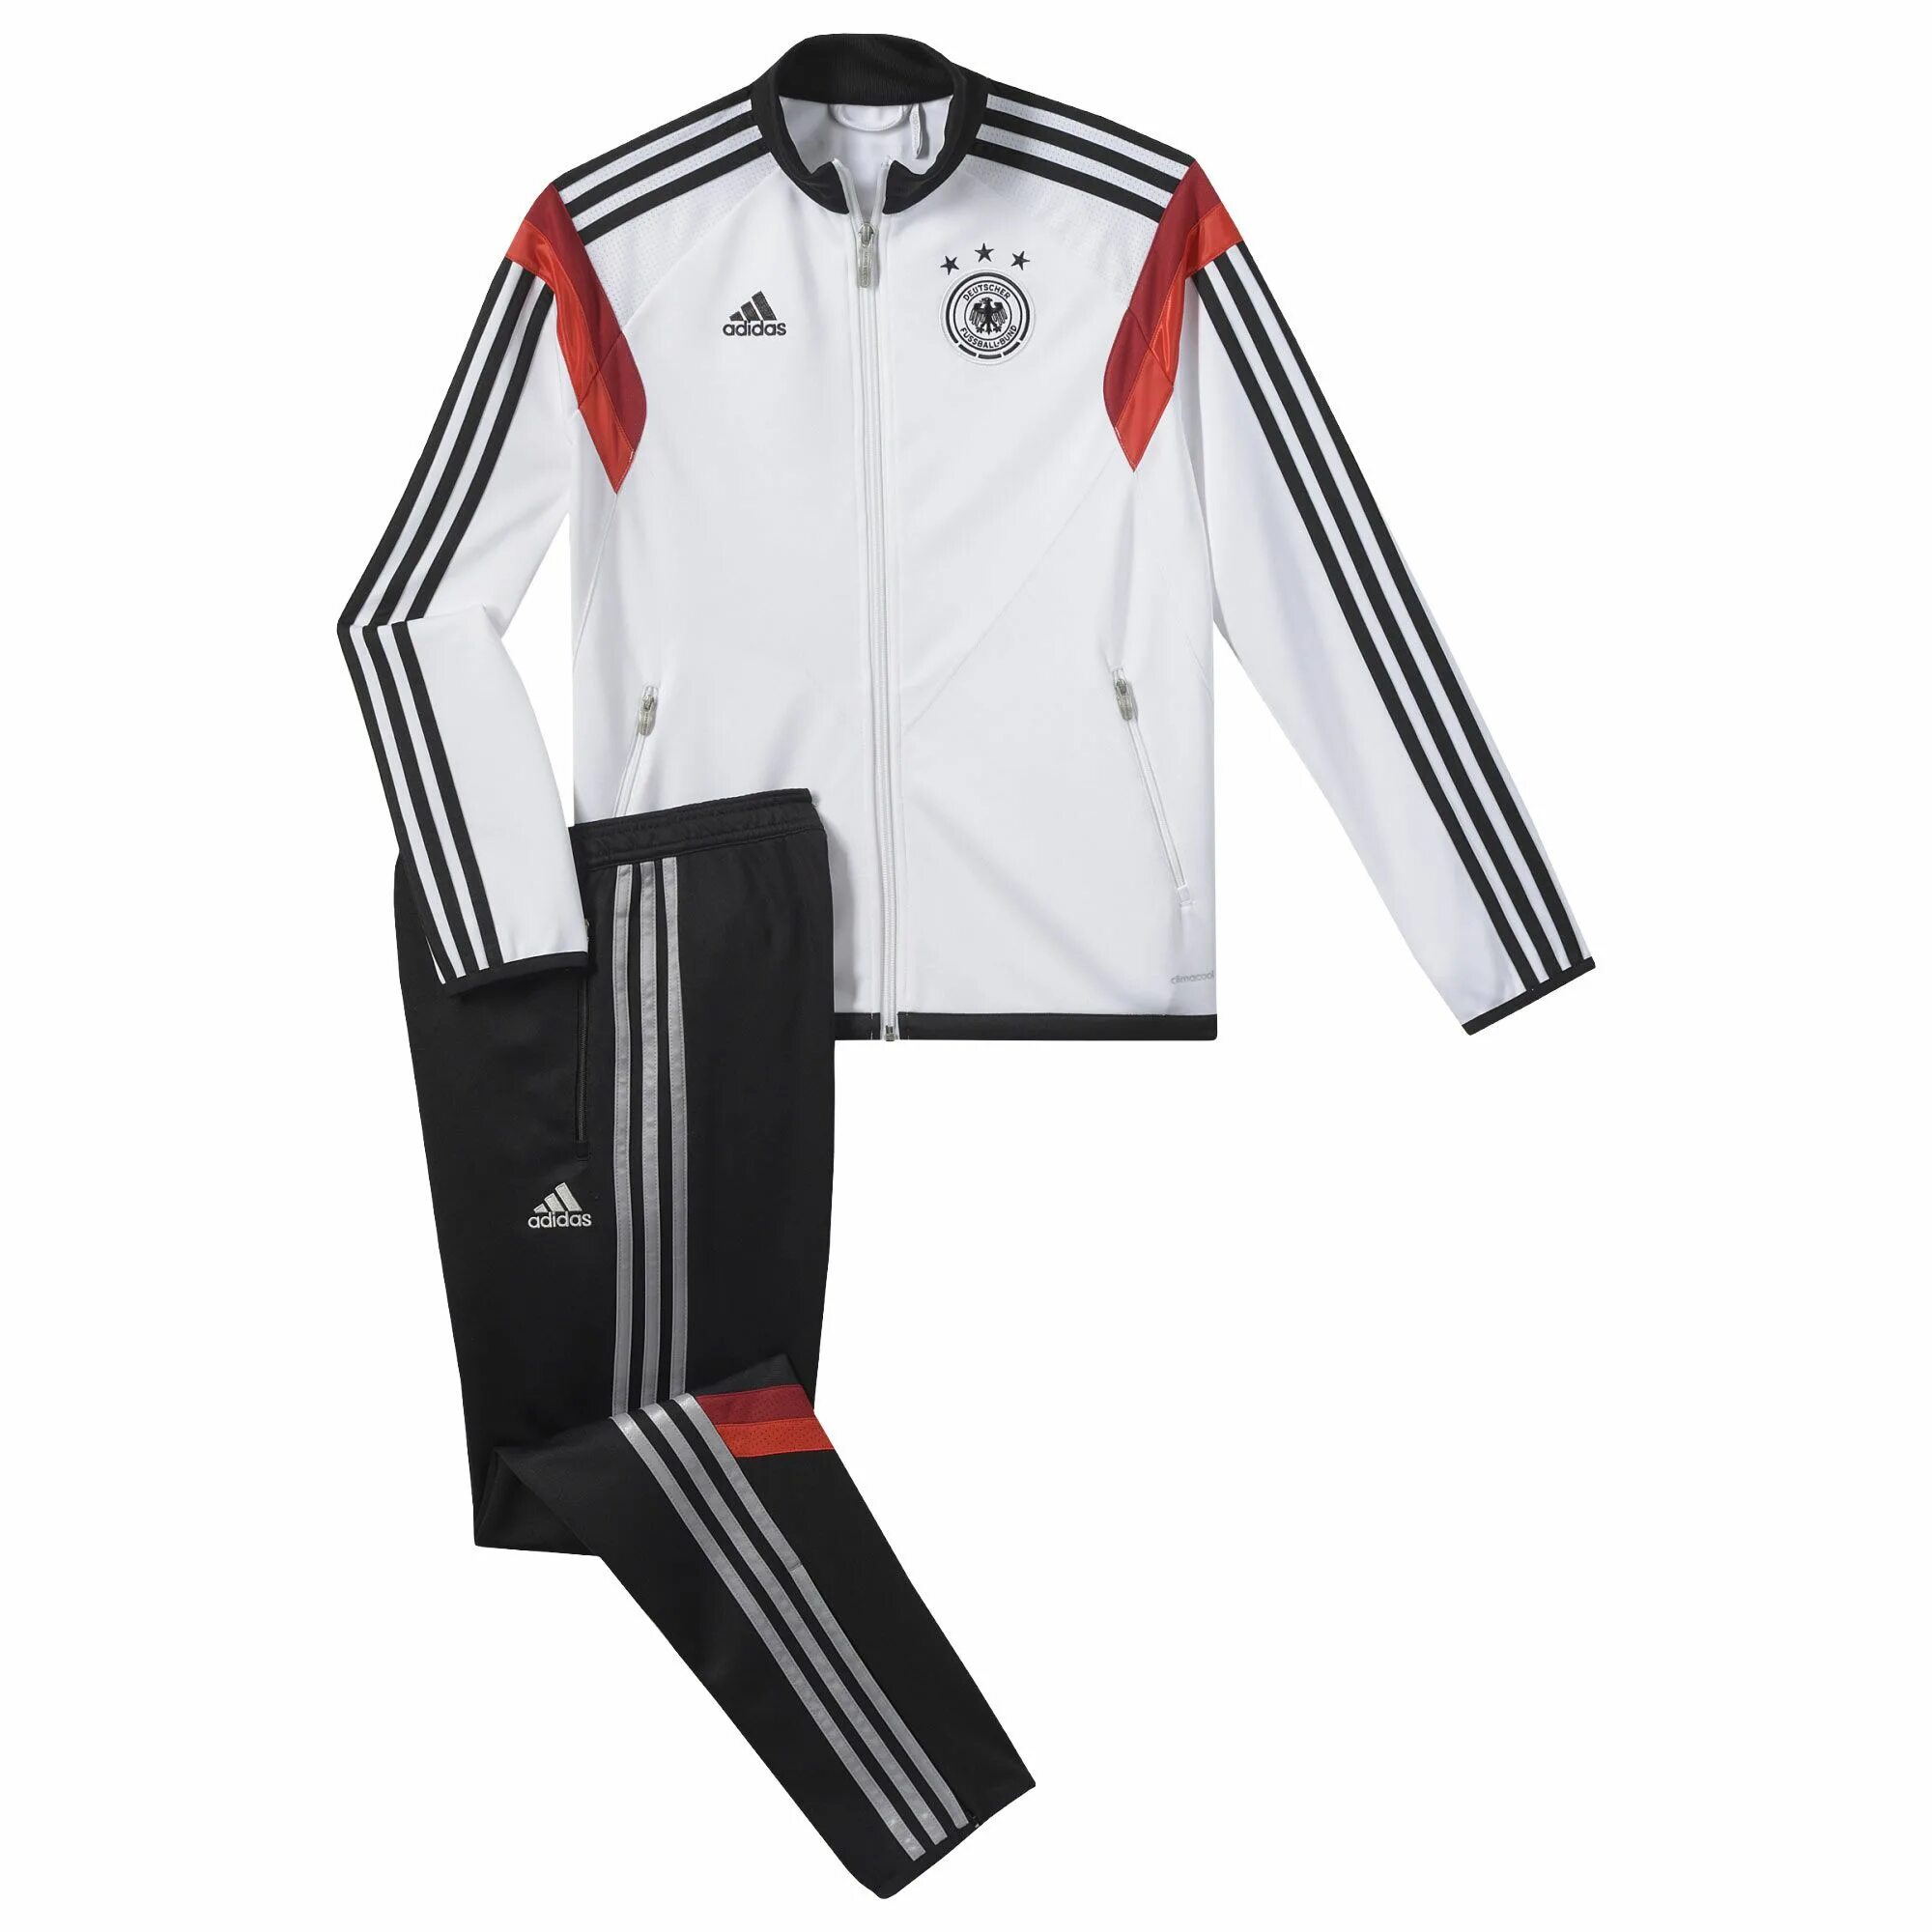 Костюм спортивный adidas DFB 80. Adidas DFB сборной Германии костюмы. Adidas DFB костюм. Спортивный костюм adidas DFB. Адидас сборная германии